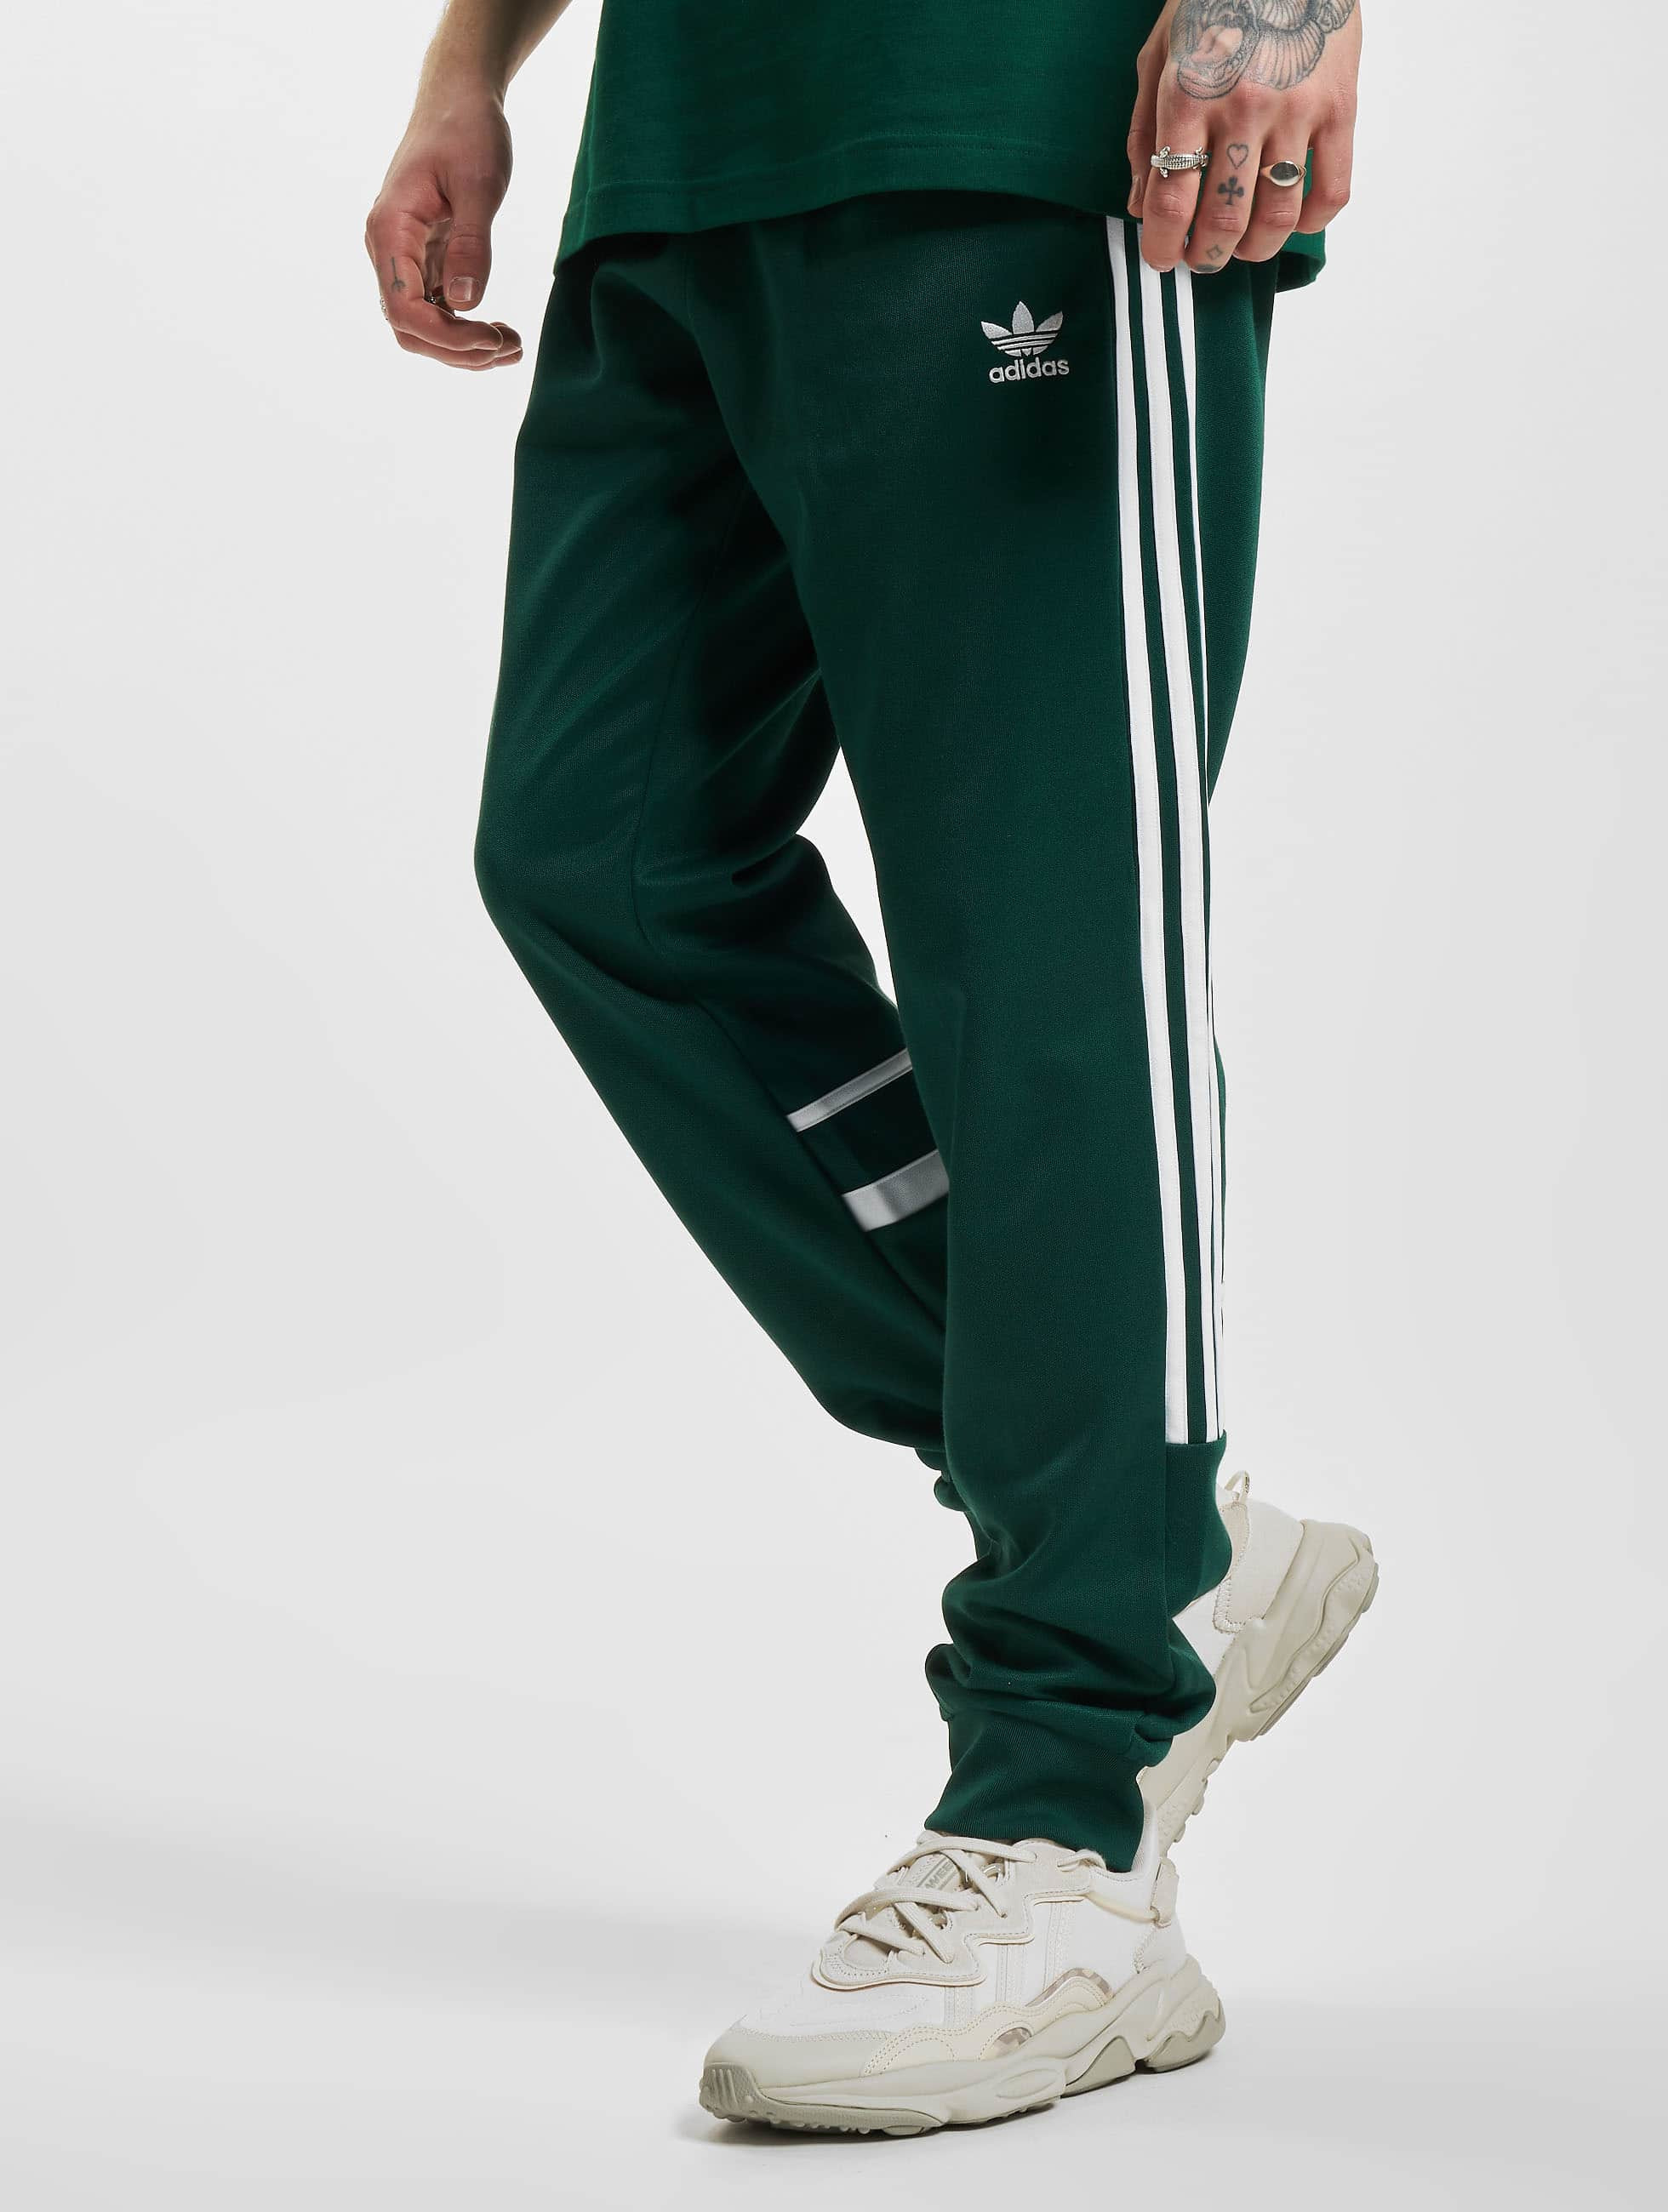 enthousiast Verenigde Staten van Amerika Prijs adidas Originals broek / joggingbroek Cutline in groen 987097